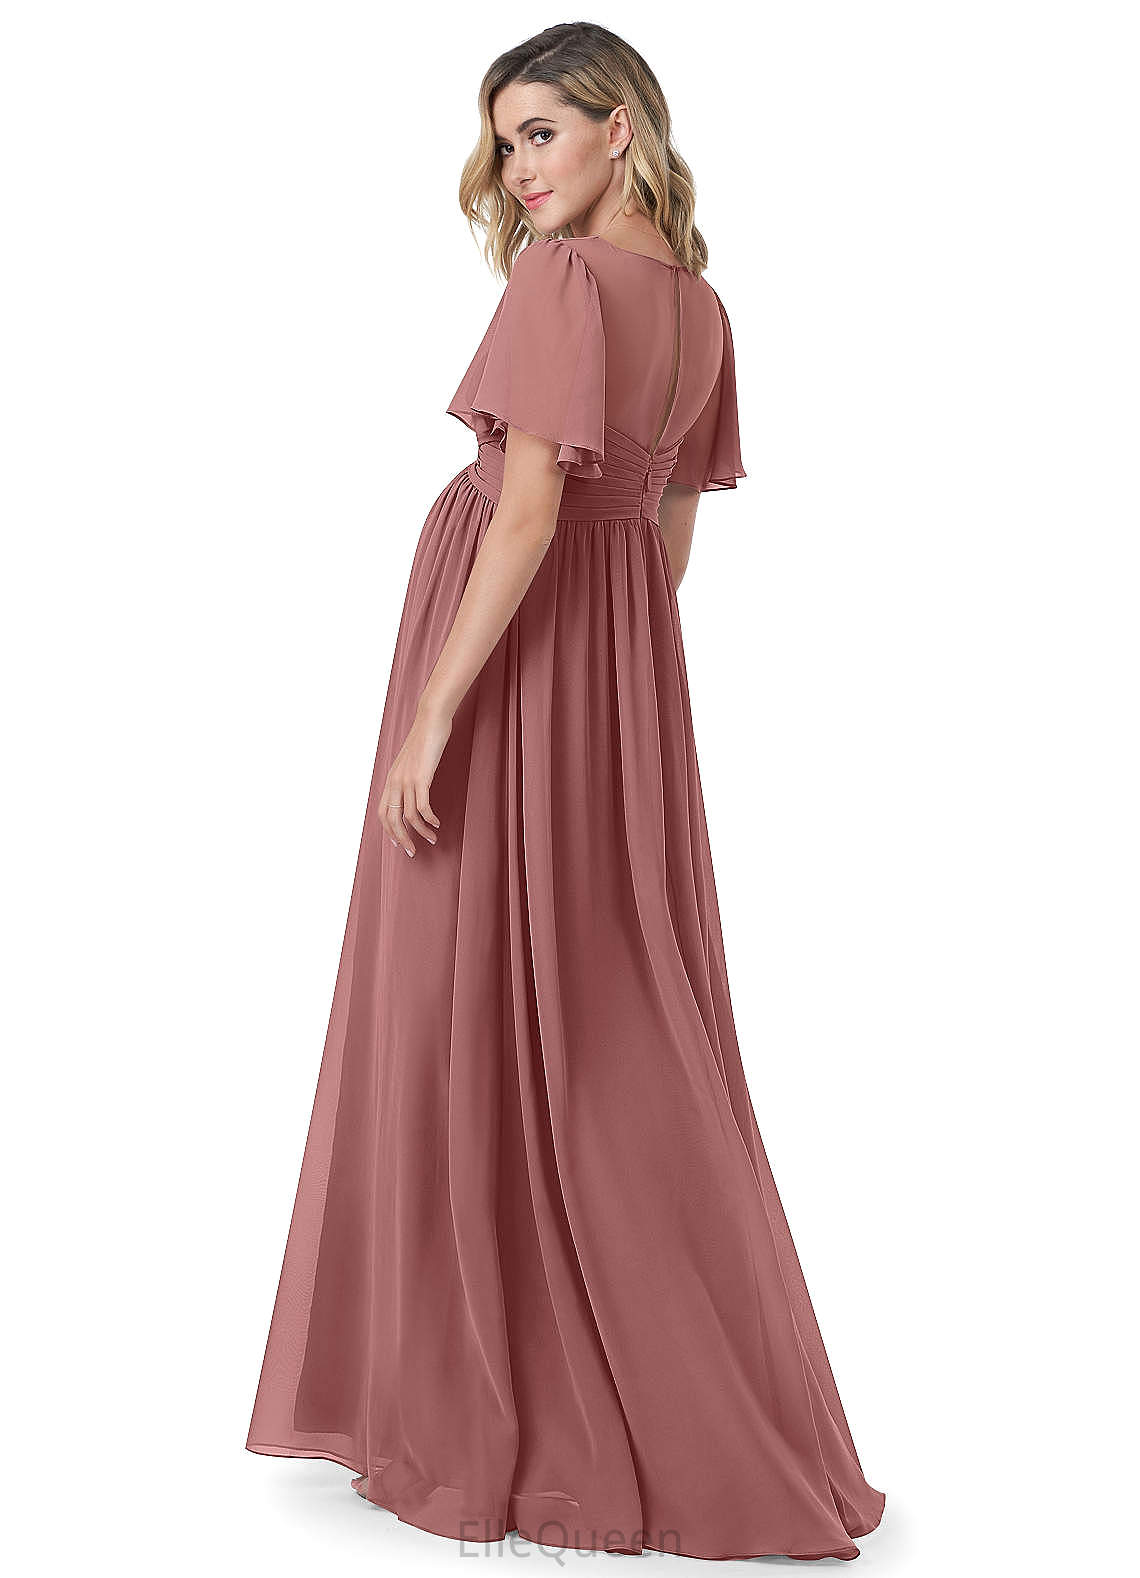 Angelique Natural Waist Sleeveless Floor Length A-Line/Princess Straps Bridesmaid Dresses